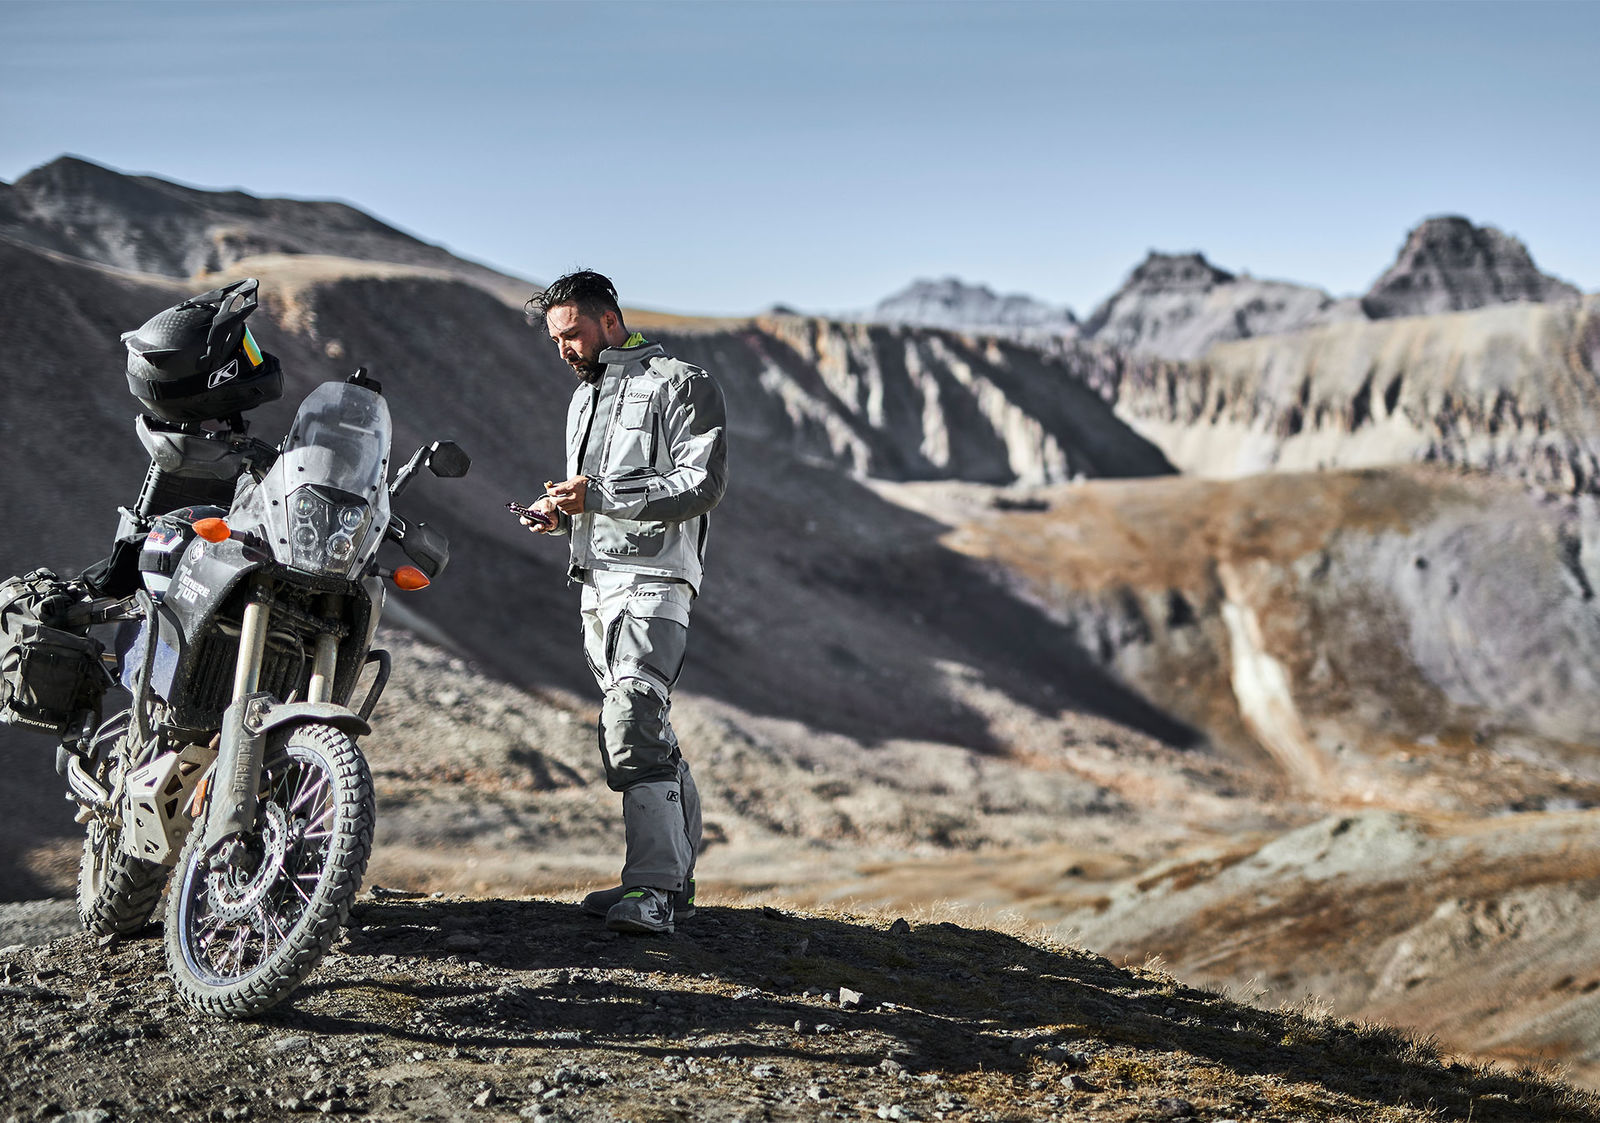 KLIM Motorradbekleidung: Das nächste Abenteuer ist gleich um die Ecke!